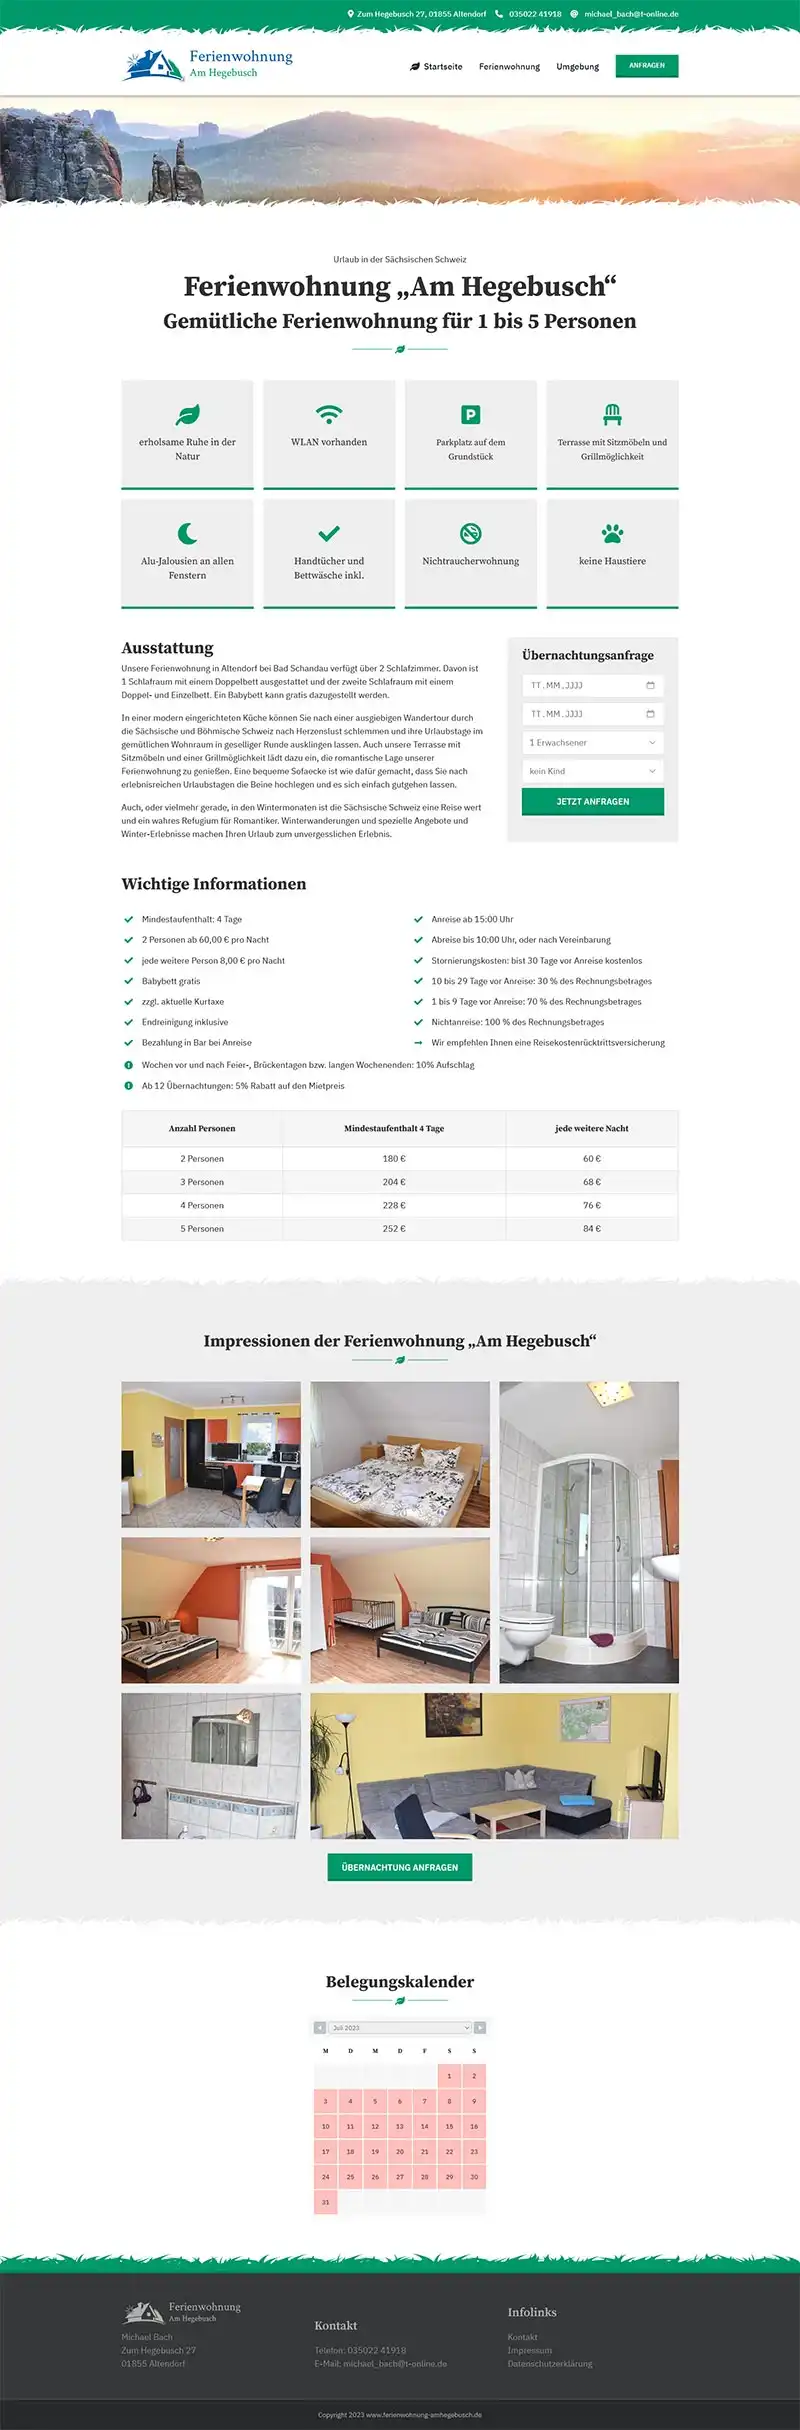 Fewo-Webseite - Websites für Ferienwohnungen - Referenz - Ferienwohnung "Am Hegebusch" - Screenshot Fullsize Unterseite